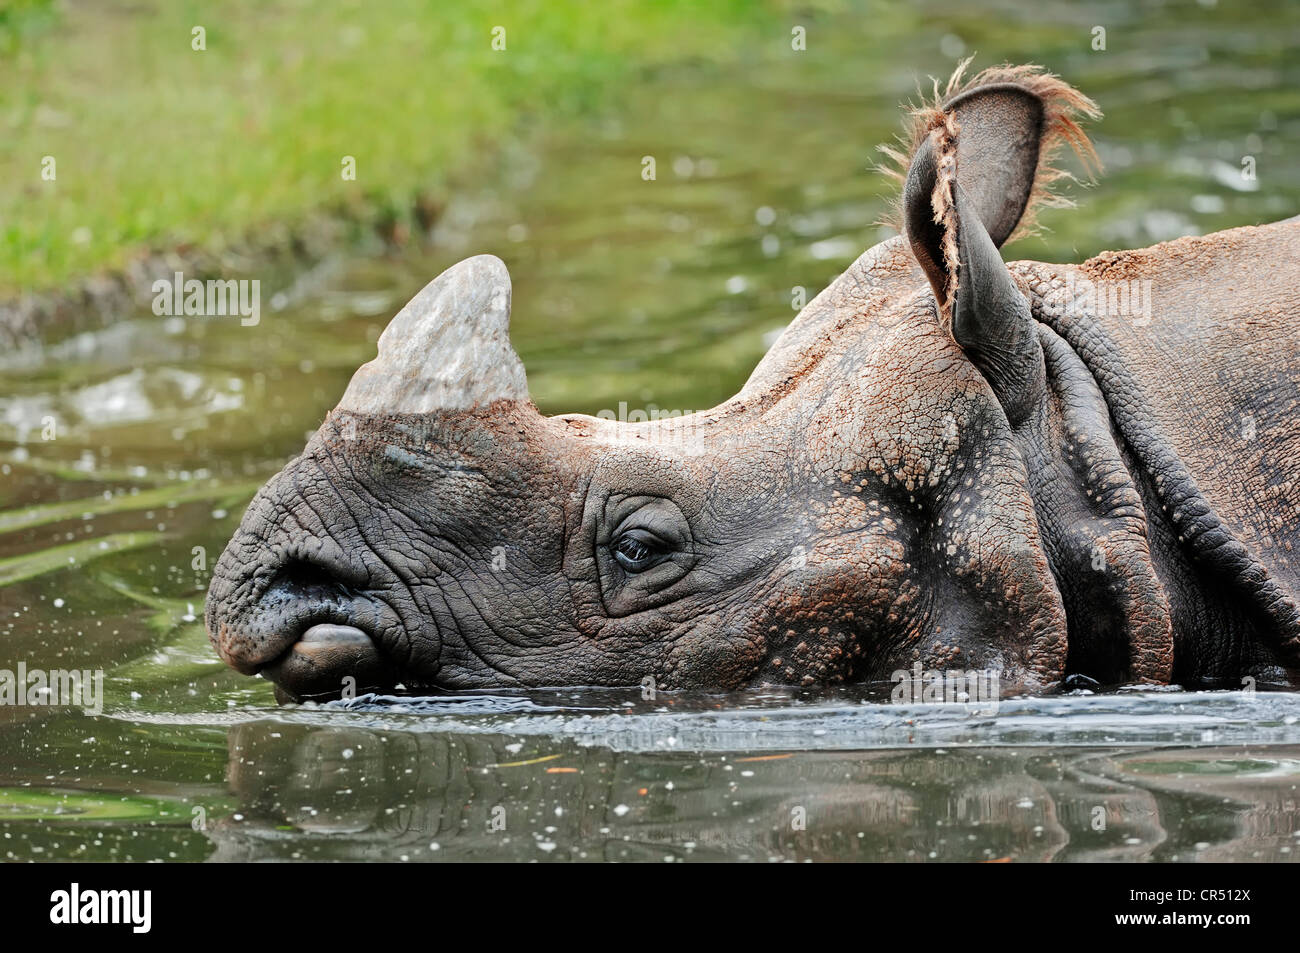 Rhinocéros indien, rhinocéros à une corne et Asiatiques rhinocéros à une corne (Rhinoceros unicornis), dans l'eau, espèces asiatiques Banque D'Images